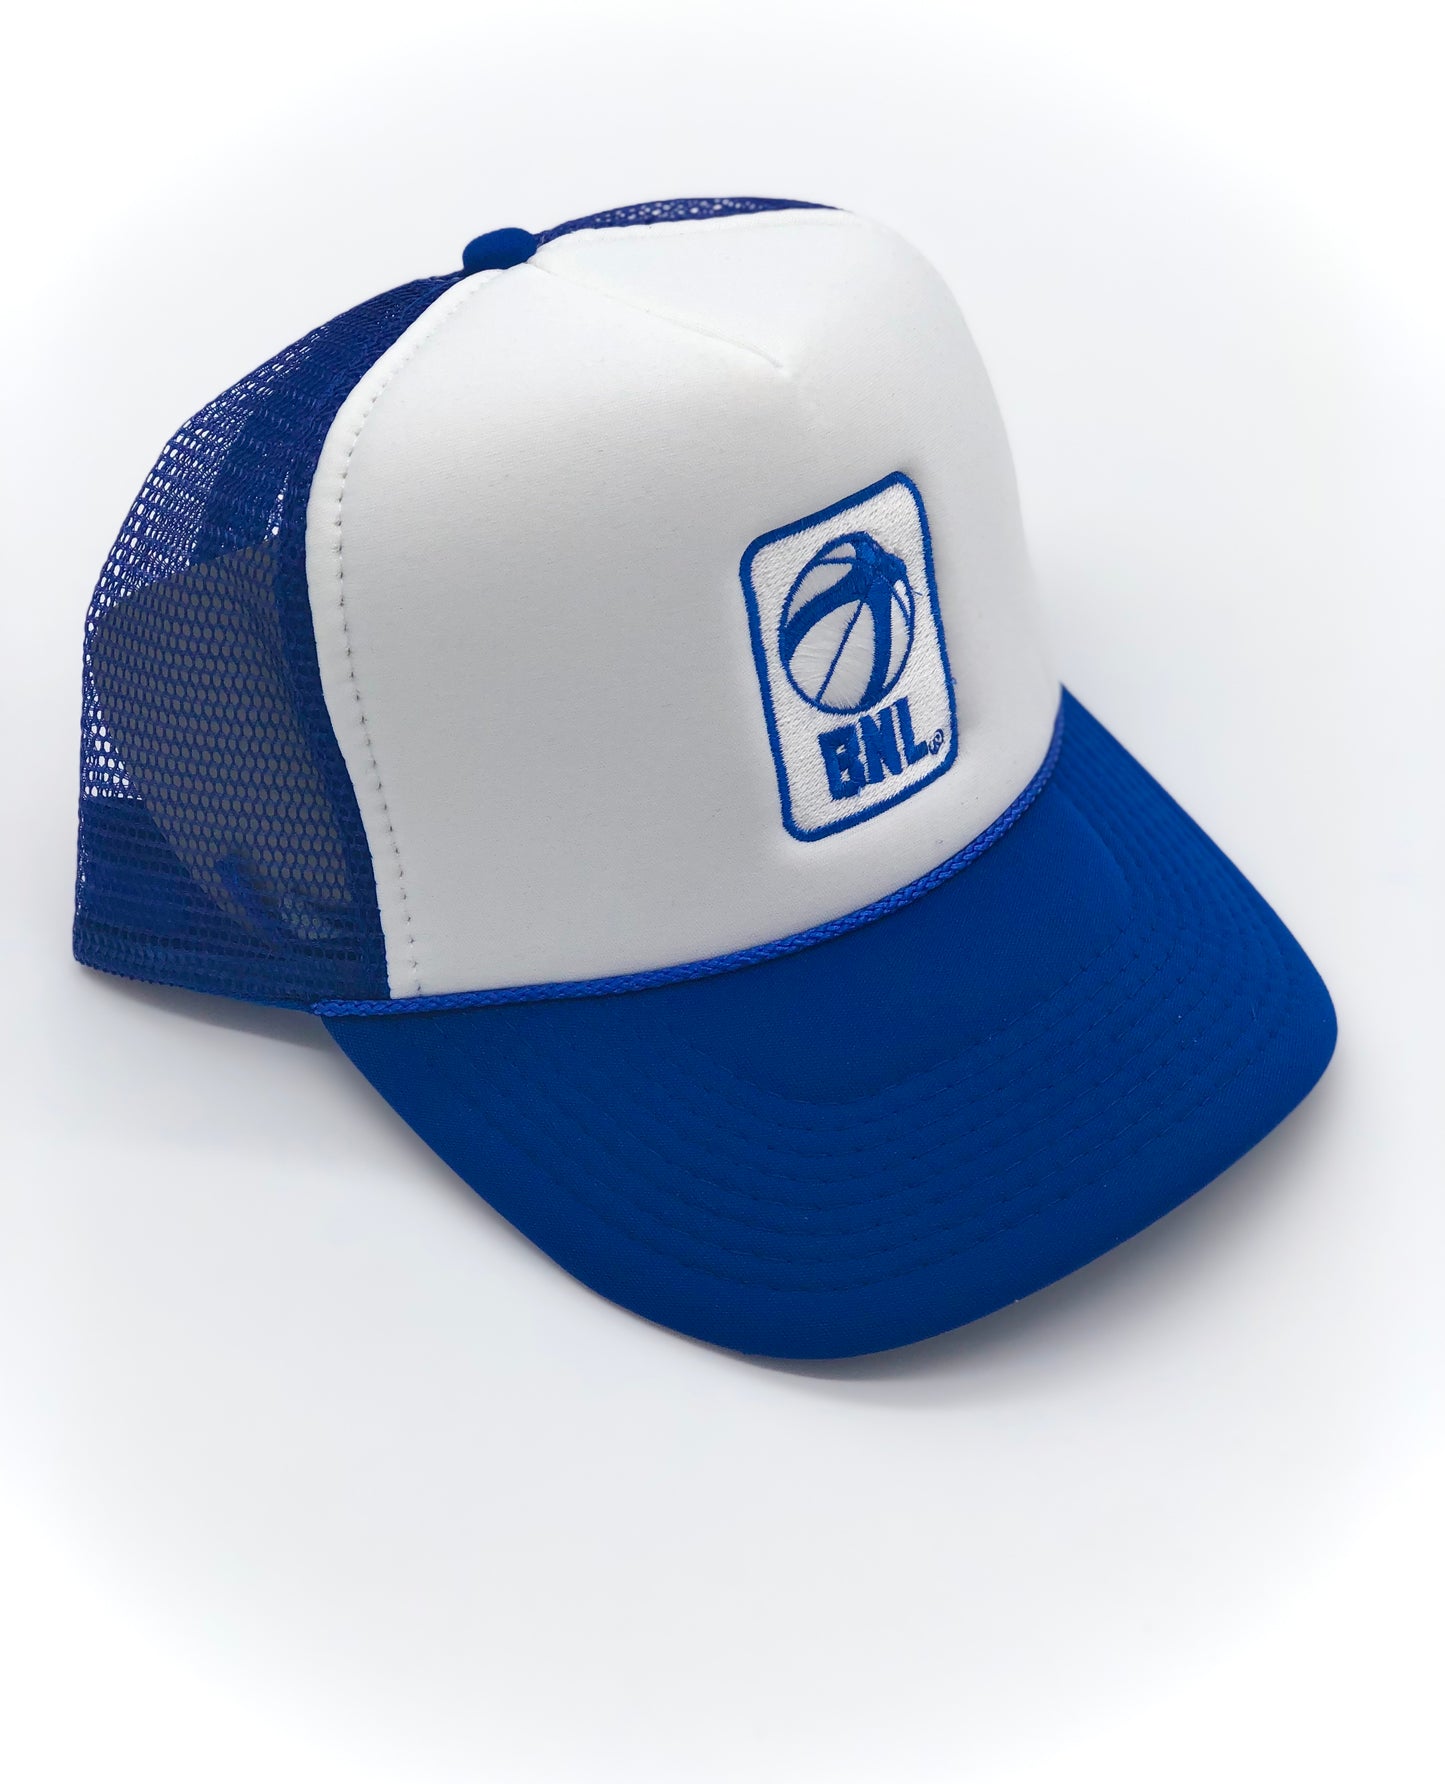 BNL Trucker Hat in Royal Blue